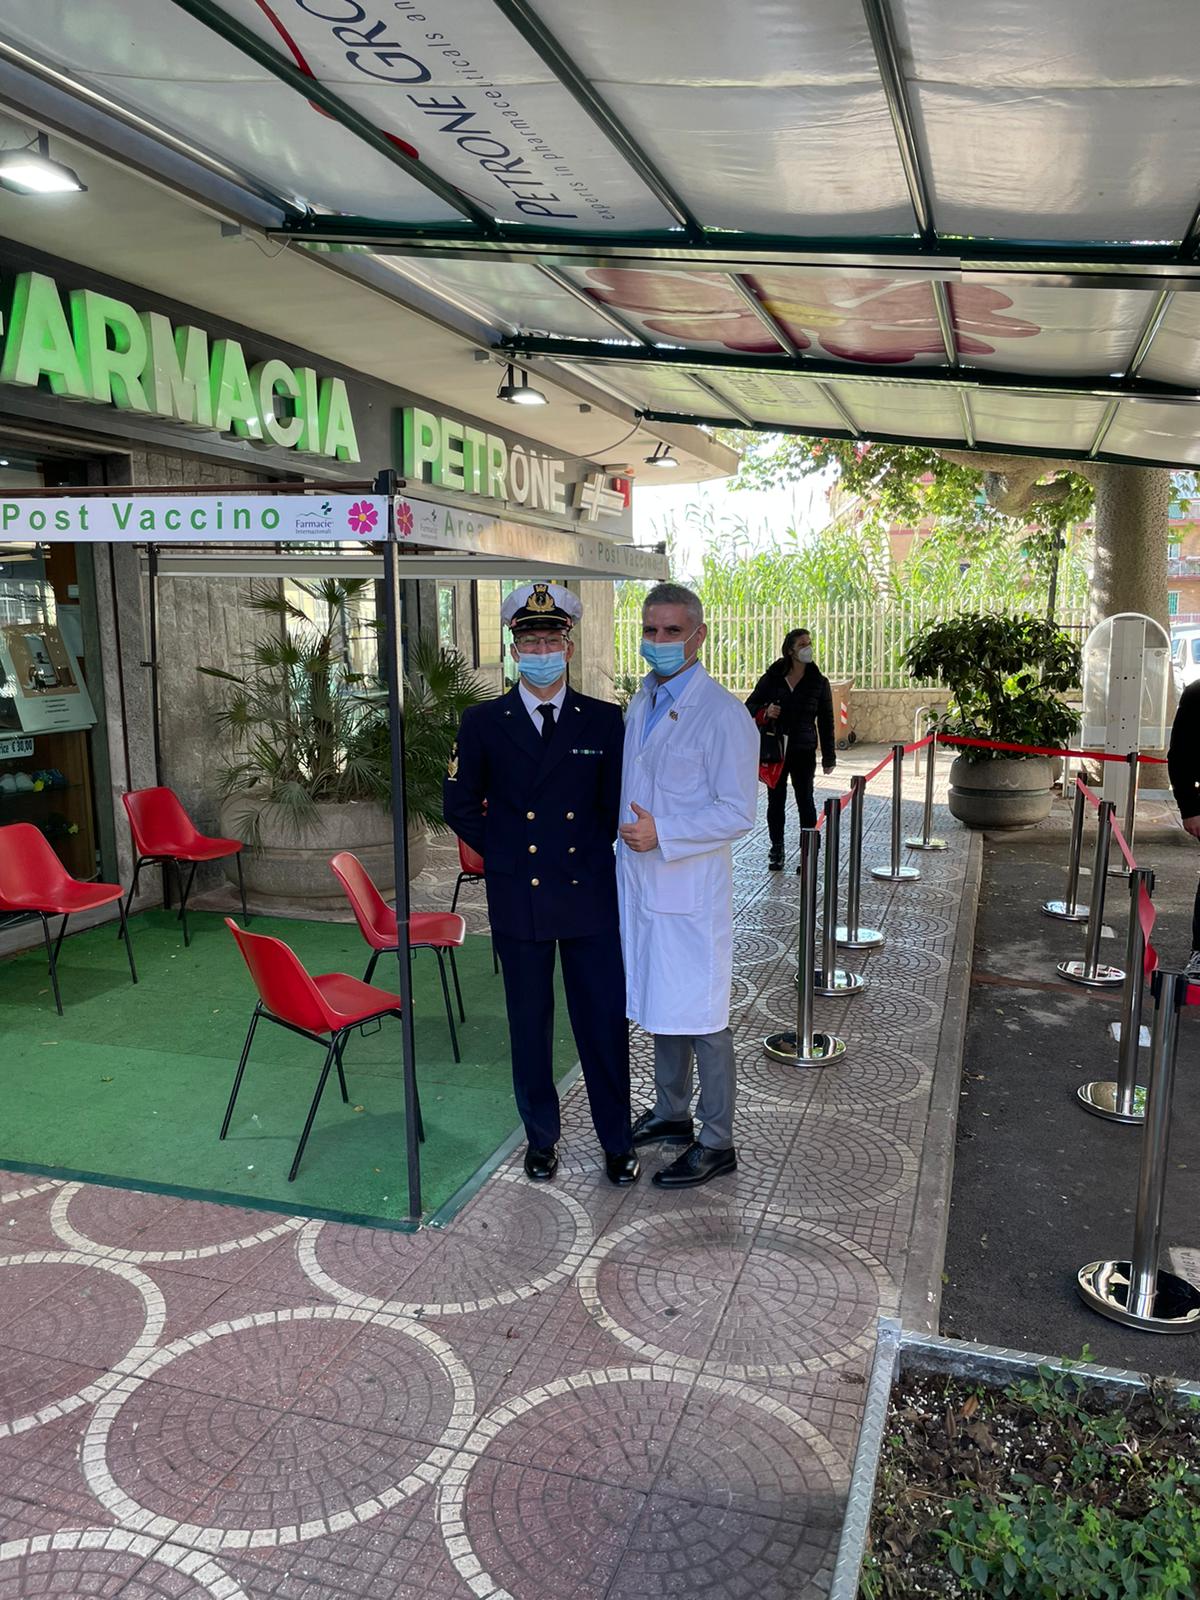 Napoli: Marina Militare, adesione a “In farmacia per i bambini”